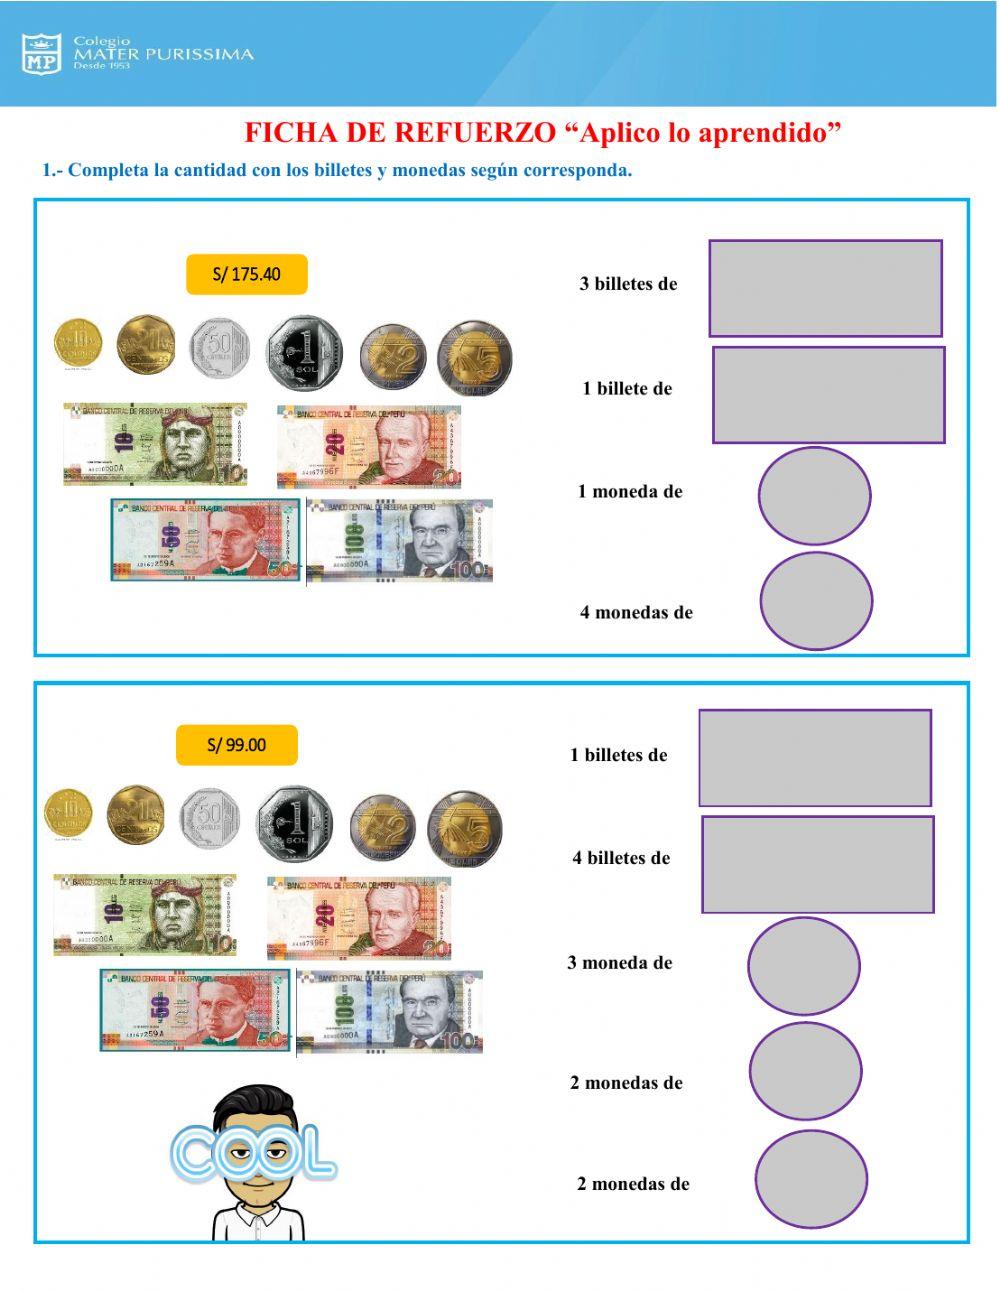 Ficha de refuerzo de equivalencia de billetes y monedas